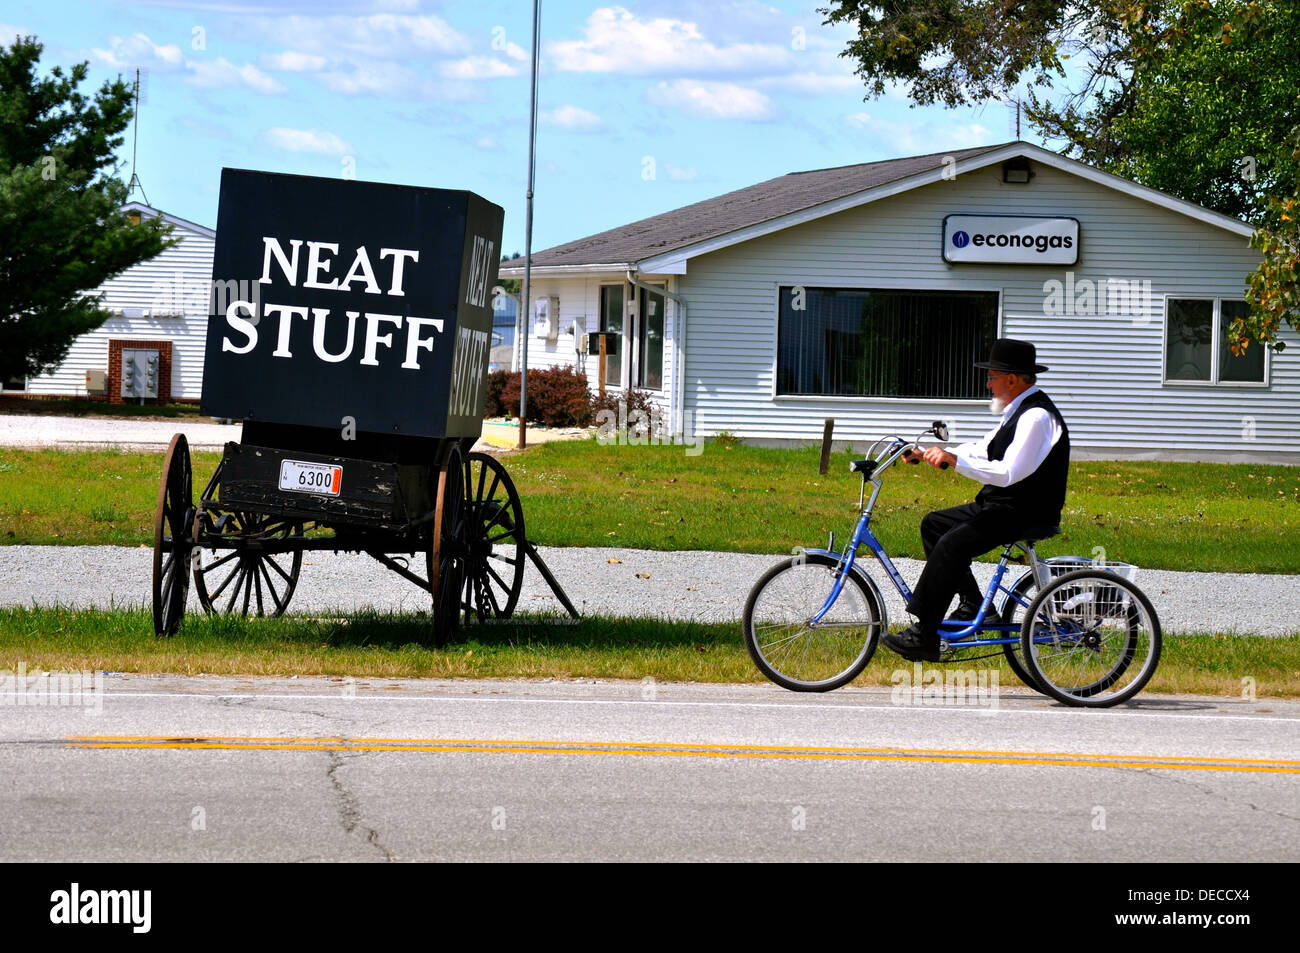 Amish man and Neat Stuff Stock Photo